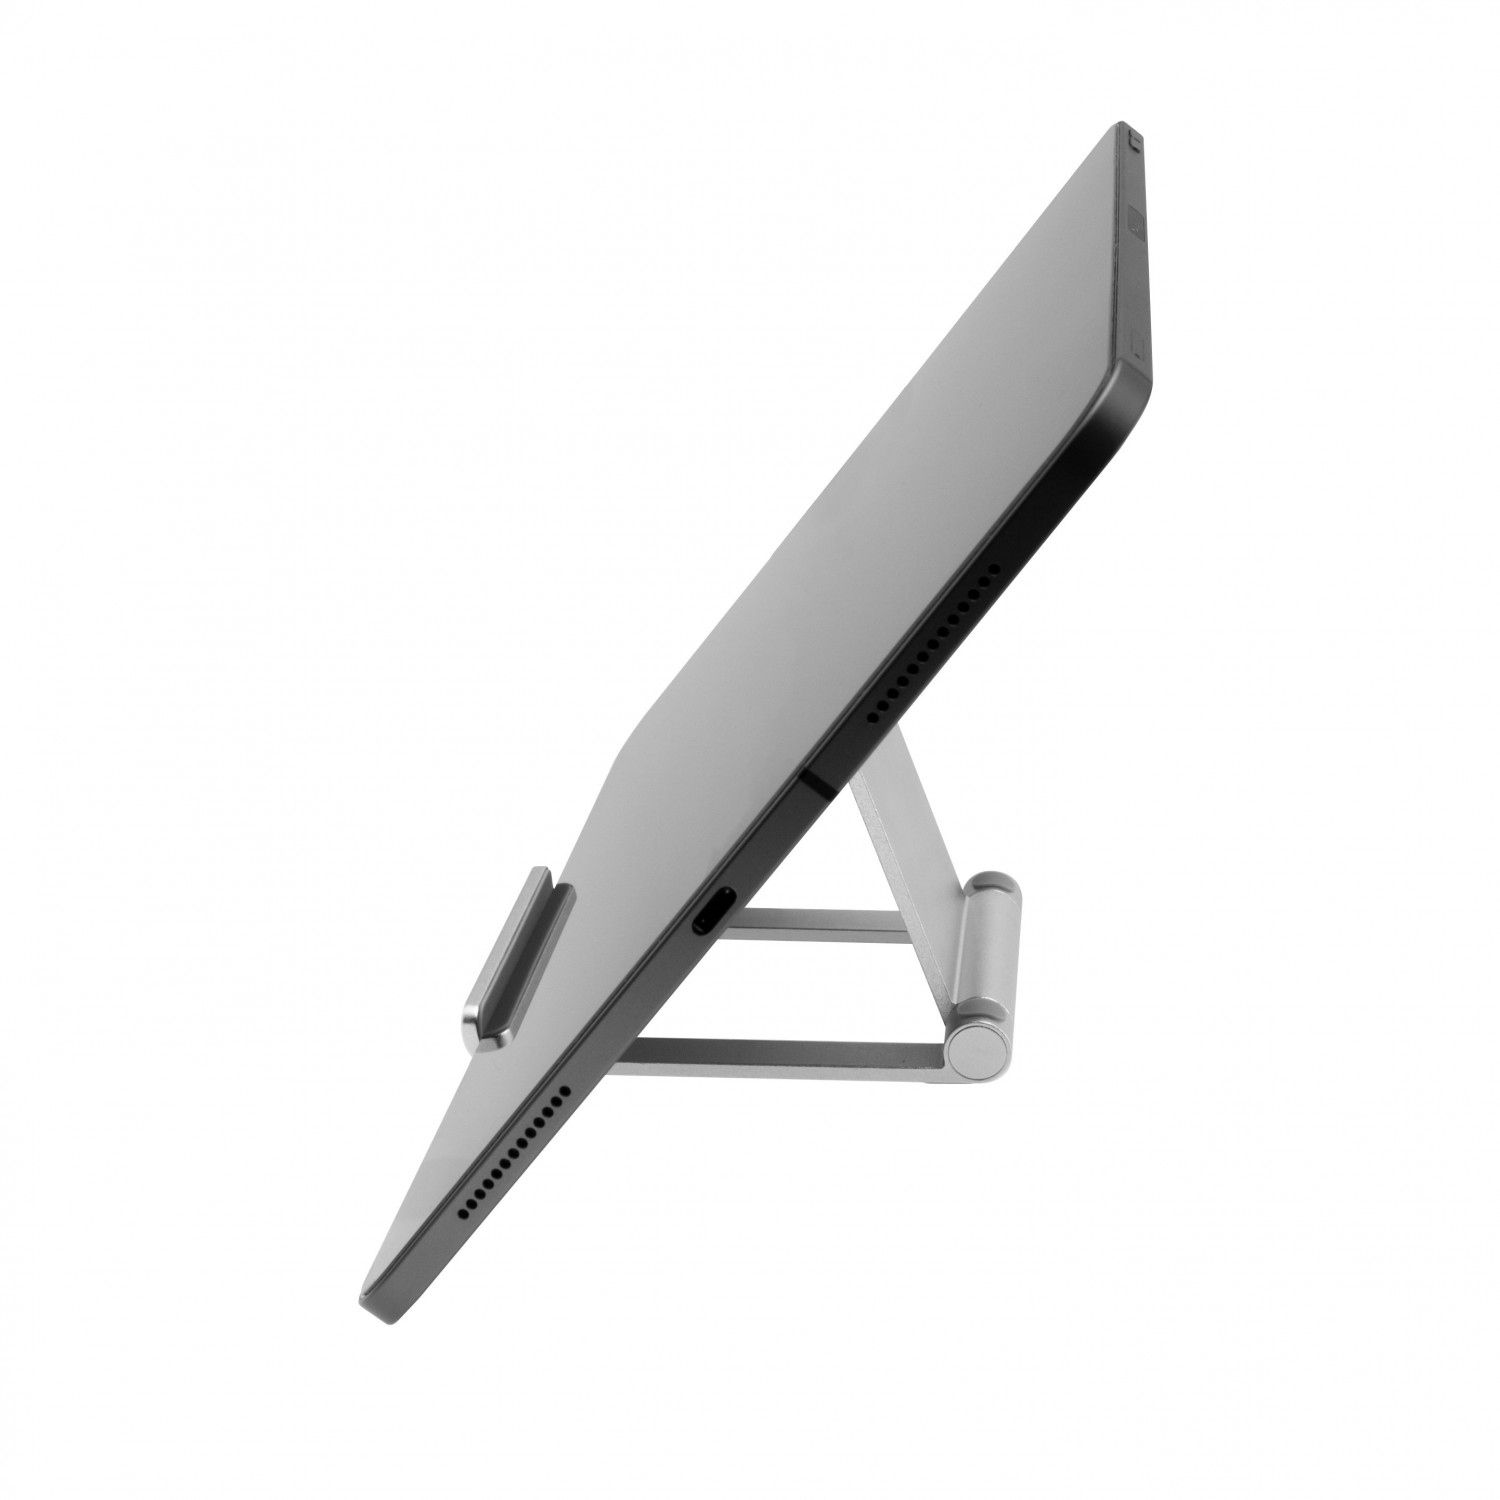 Hliníkový stojánek FIXED Frame TAB na stůl pro telefony a tablety, silver